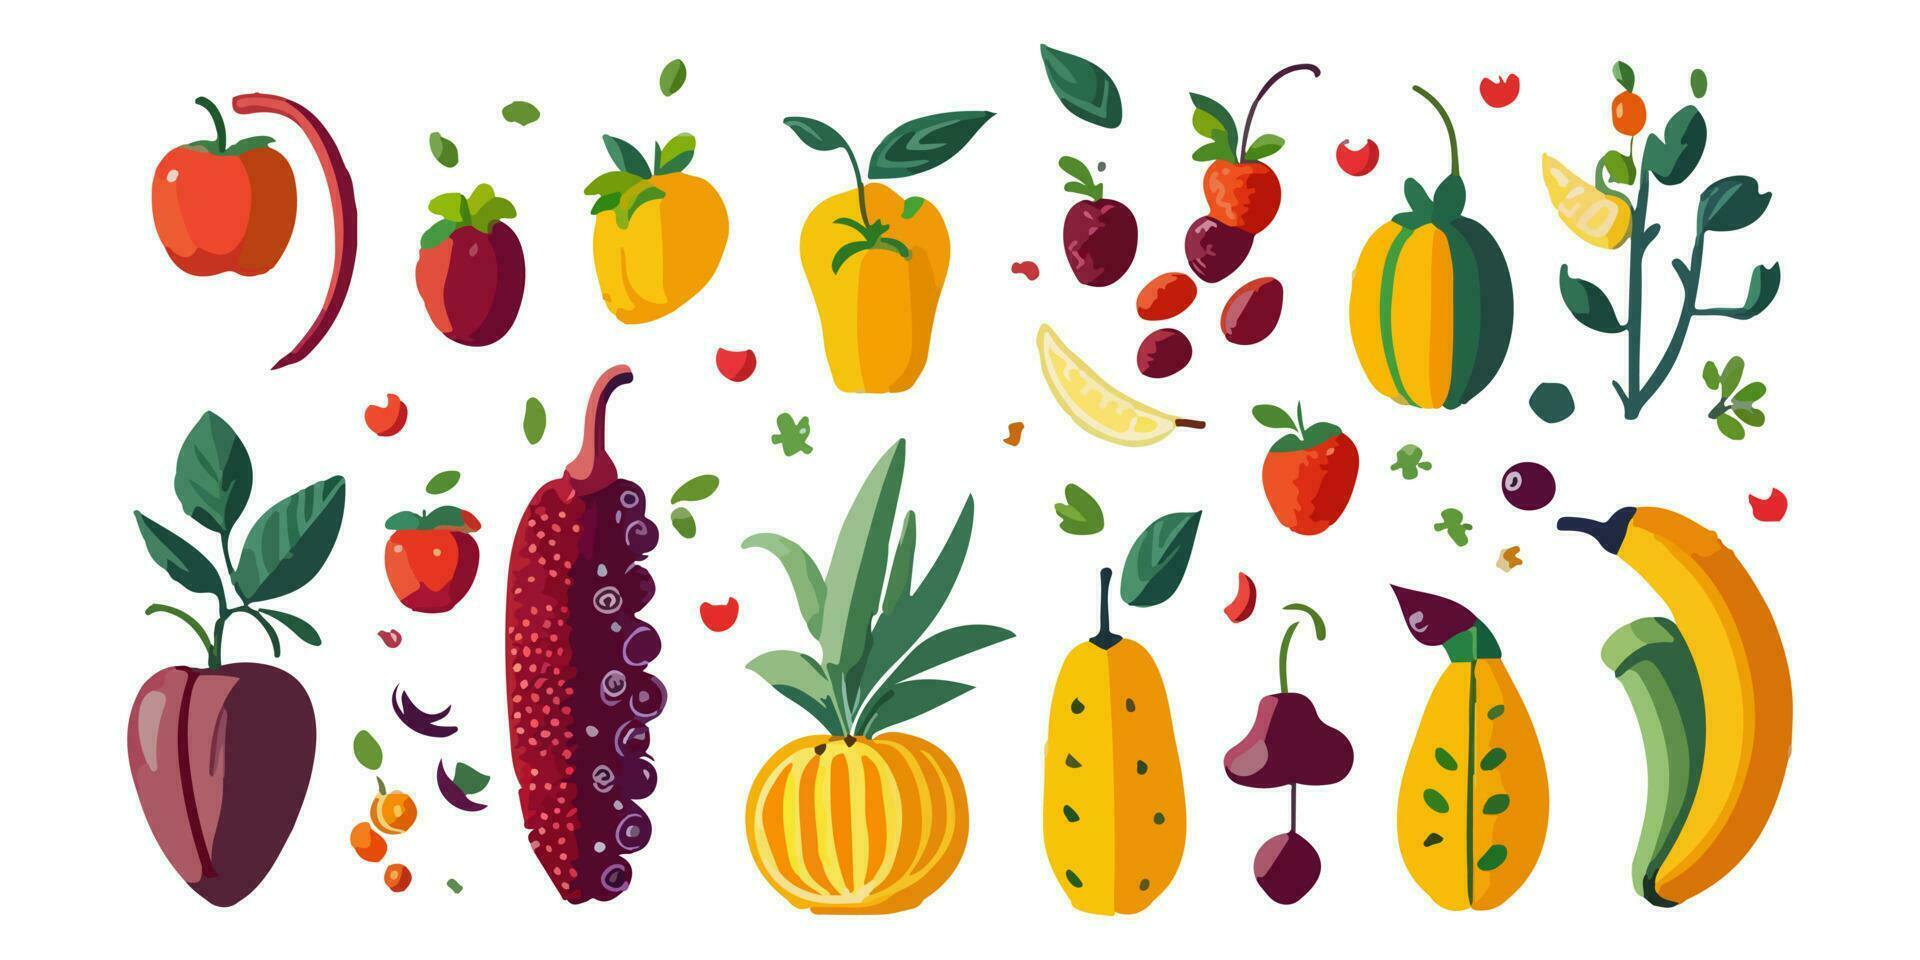 abricot, goyave, passion fruit, et plus, coloré tableau de des fruits illustré dans vecteur